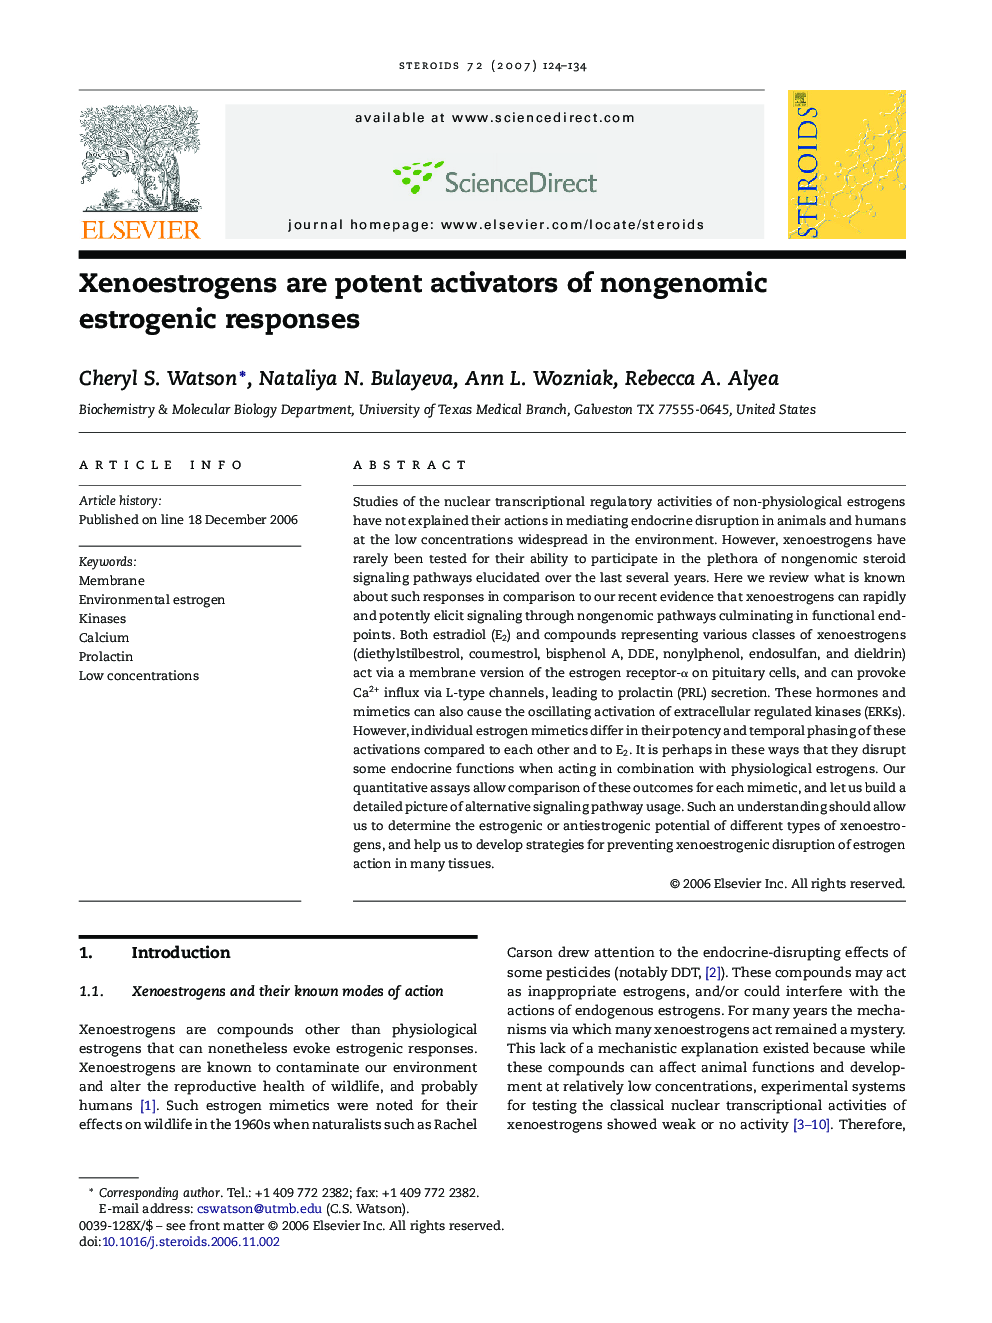 Xenoestrogens are potent activators of nongenomic estrogenic responses